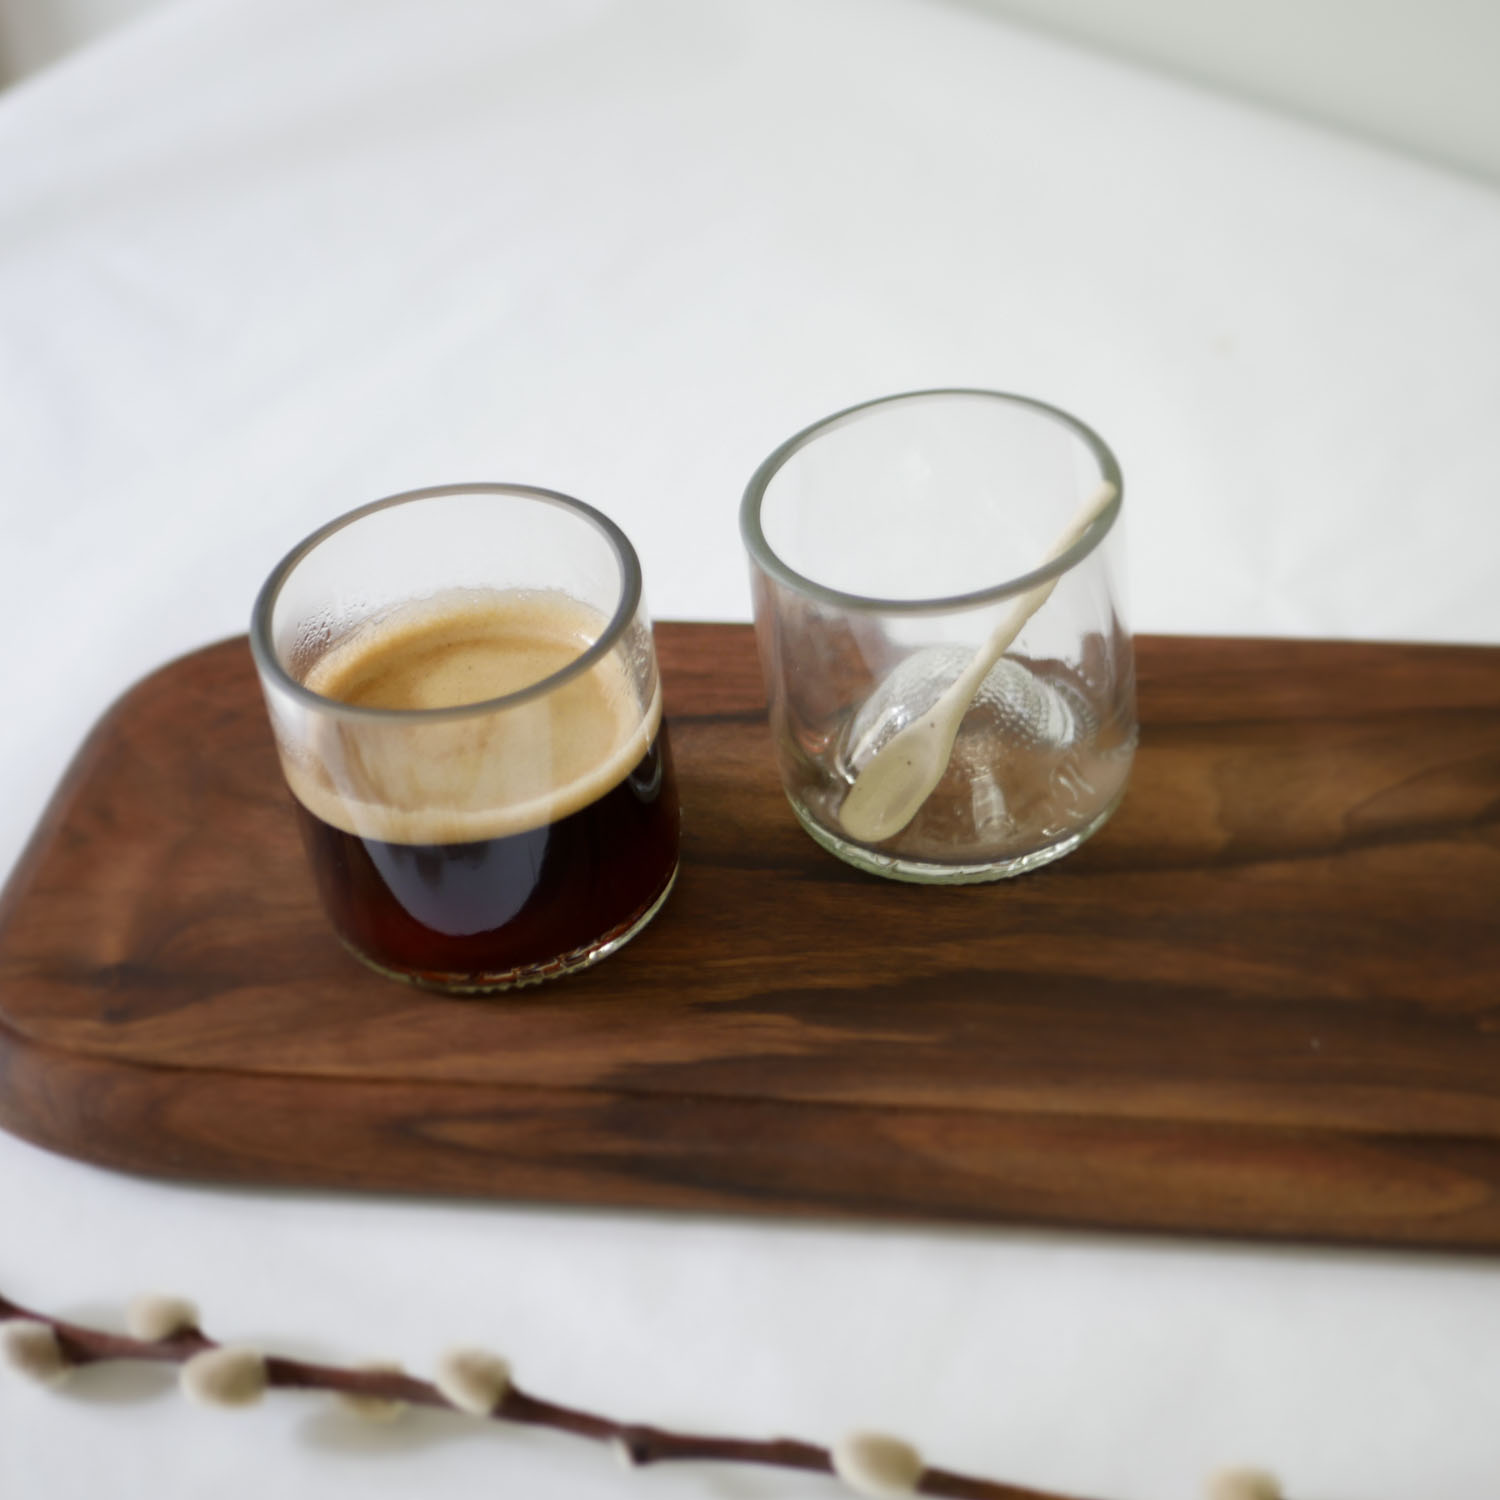 Tasse à cafe espresso en verre model ACAPULCO